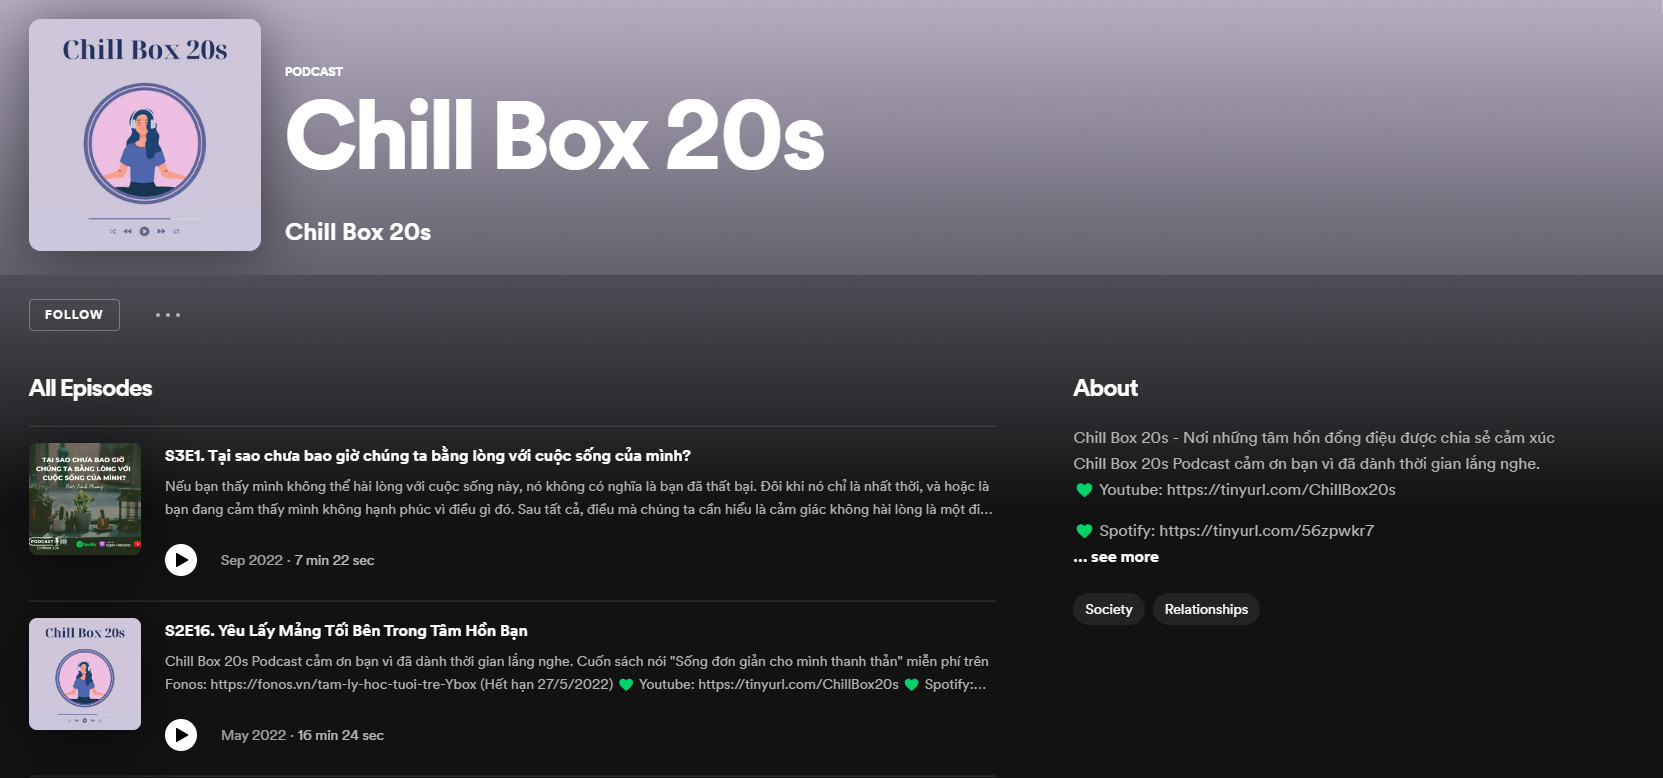 Chill Box 20s